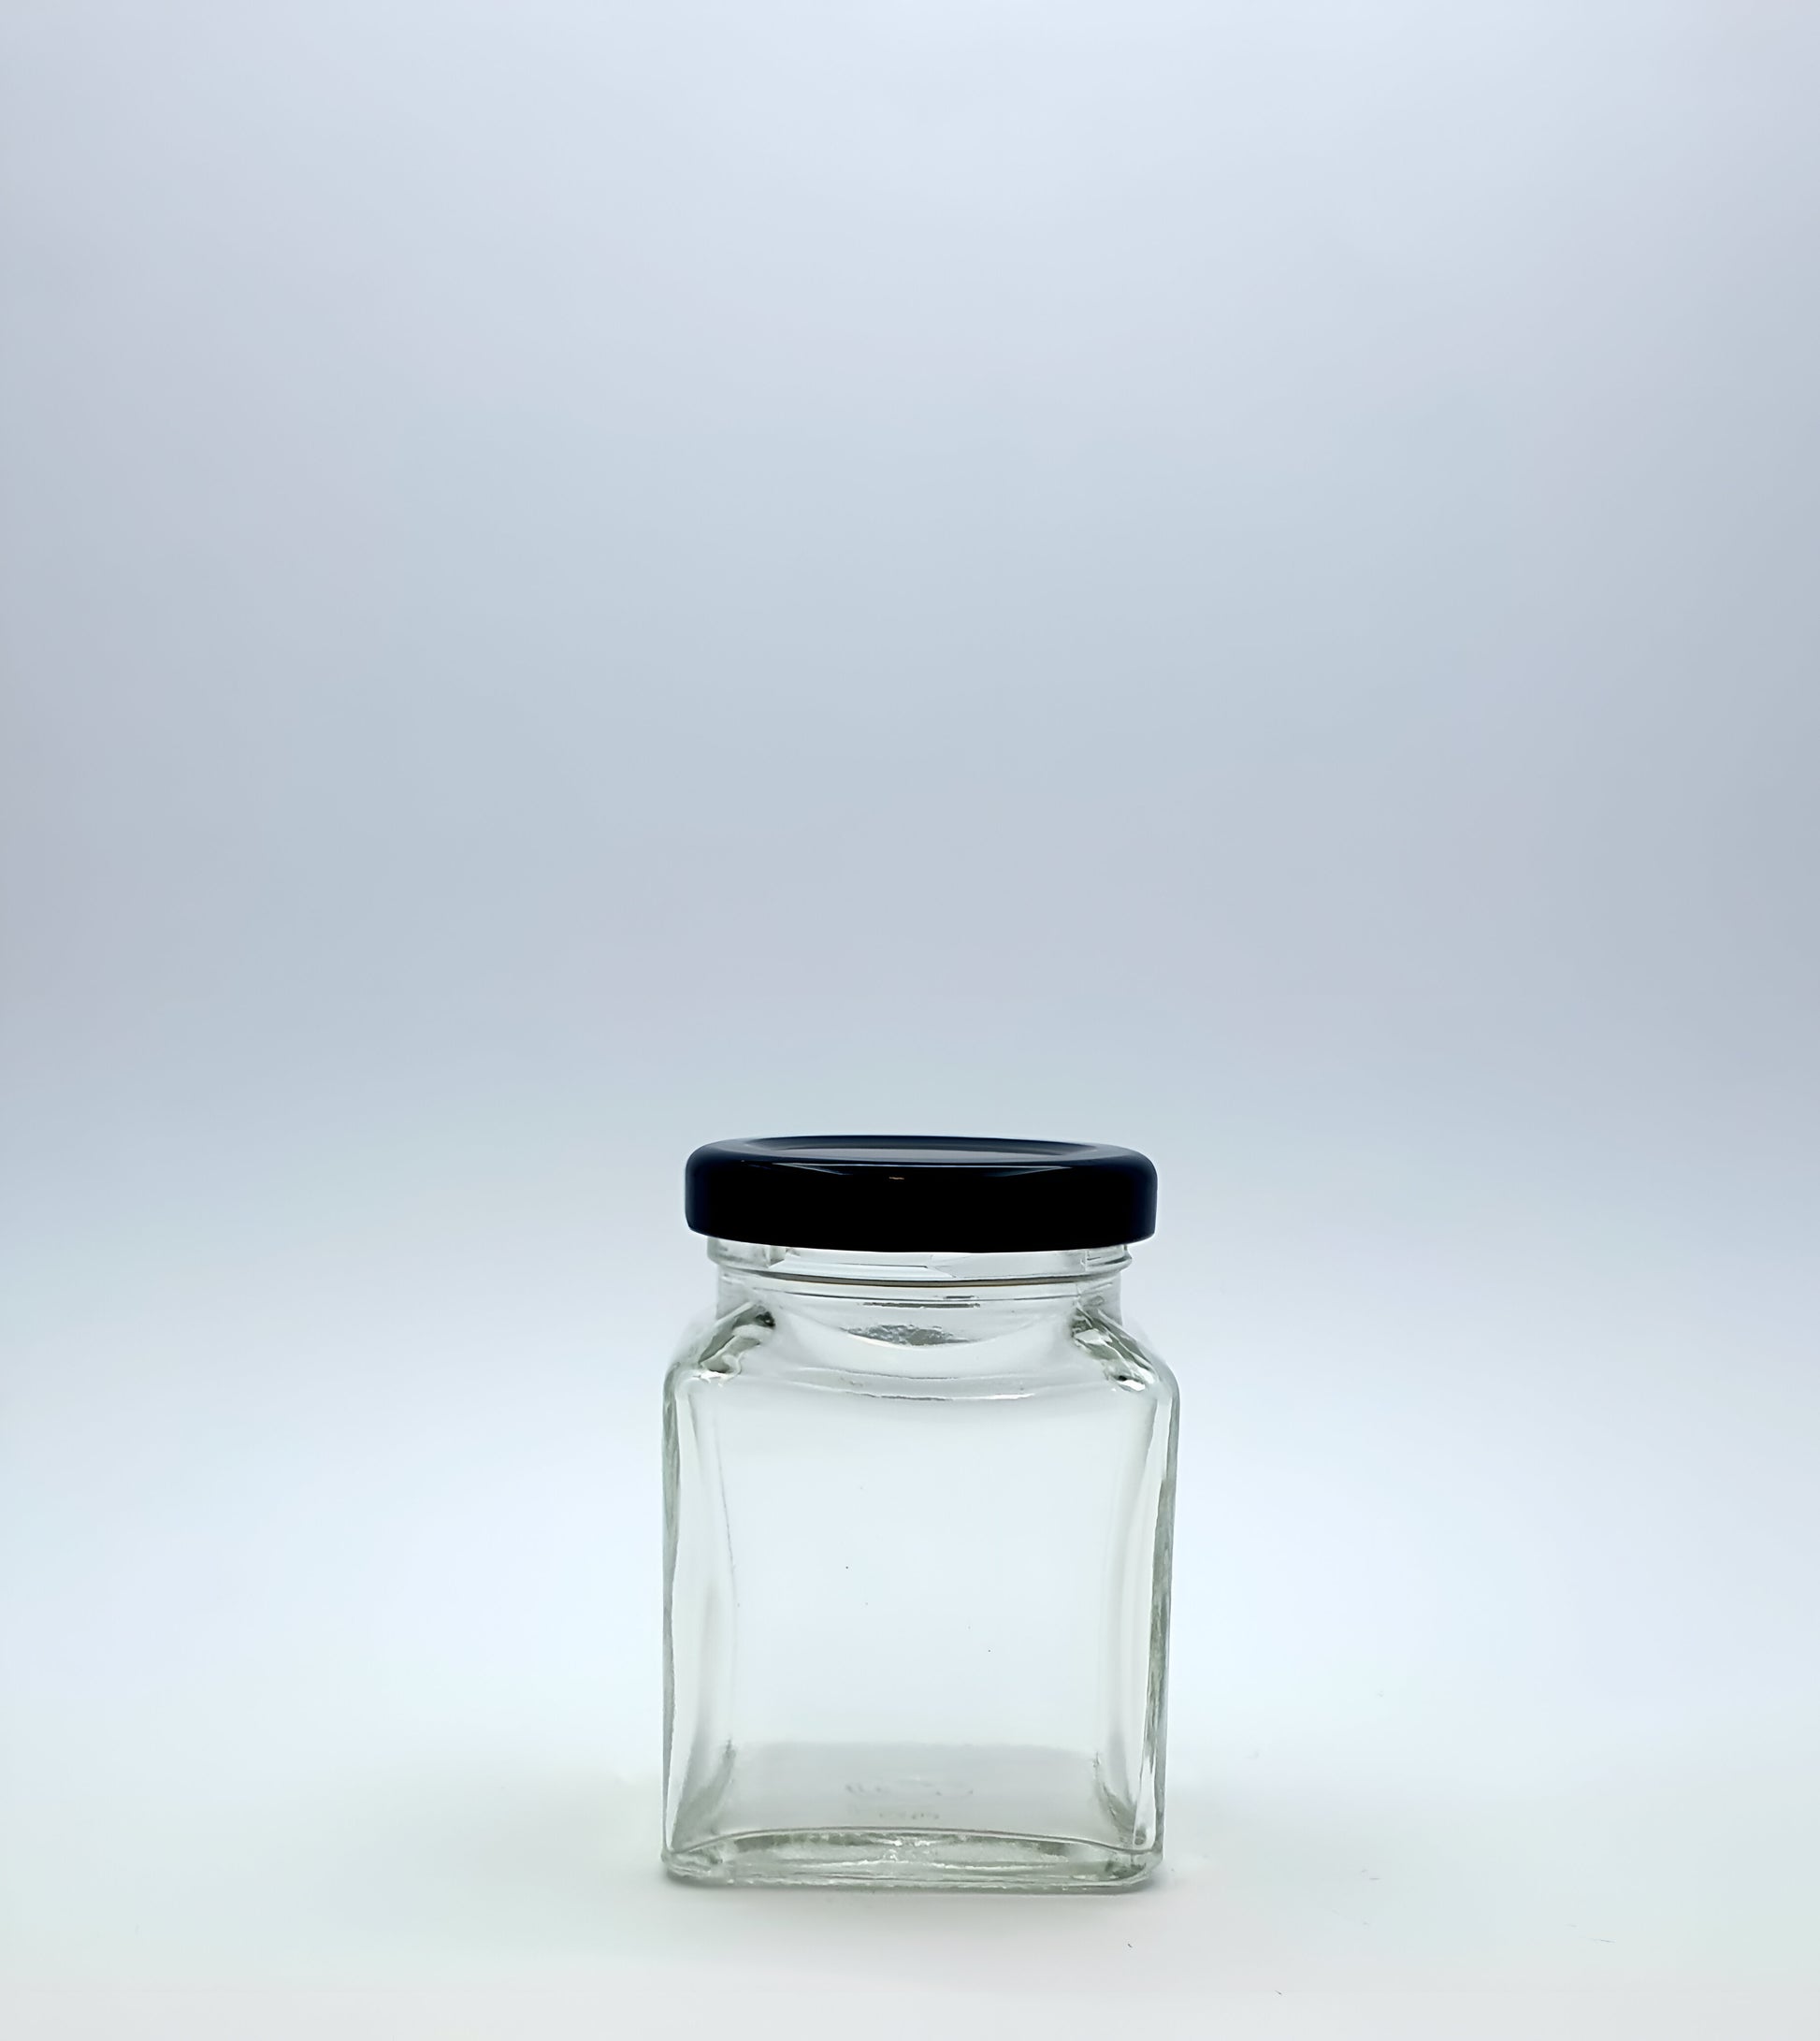 110ml(150gm) Square Glass Jar with 48mm Black Metal Twist Cap 